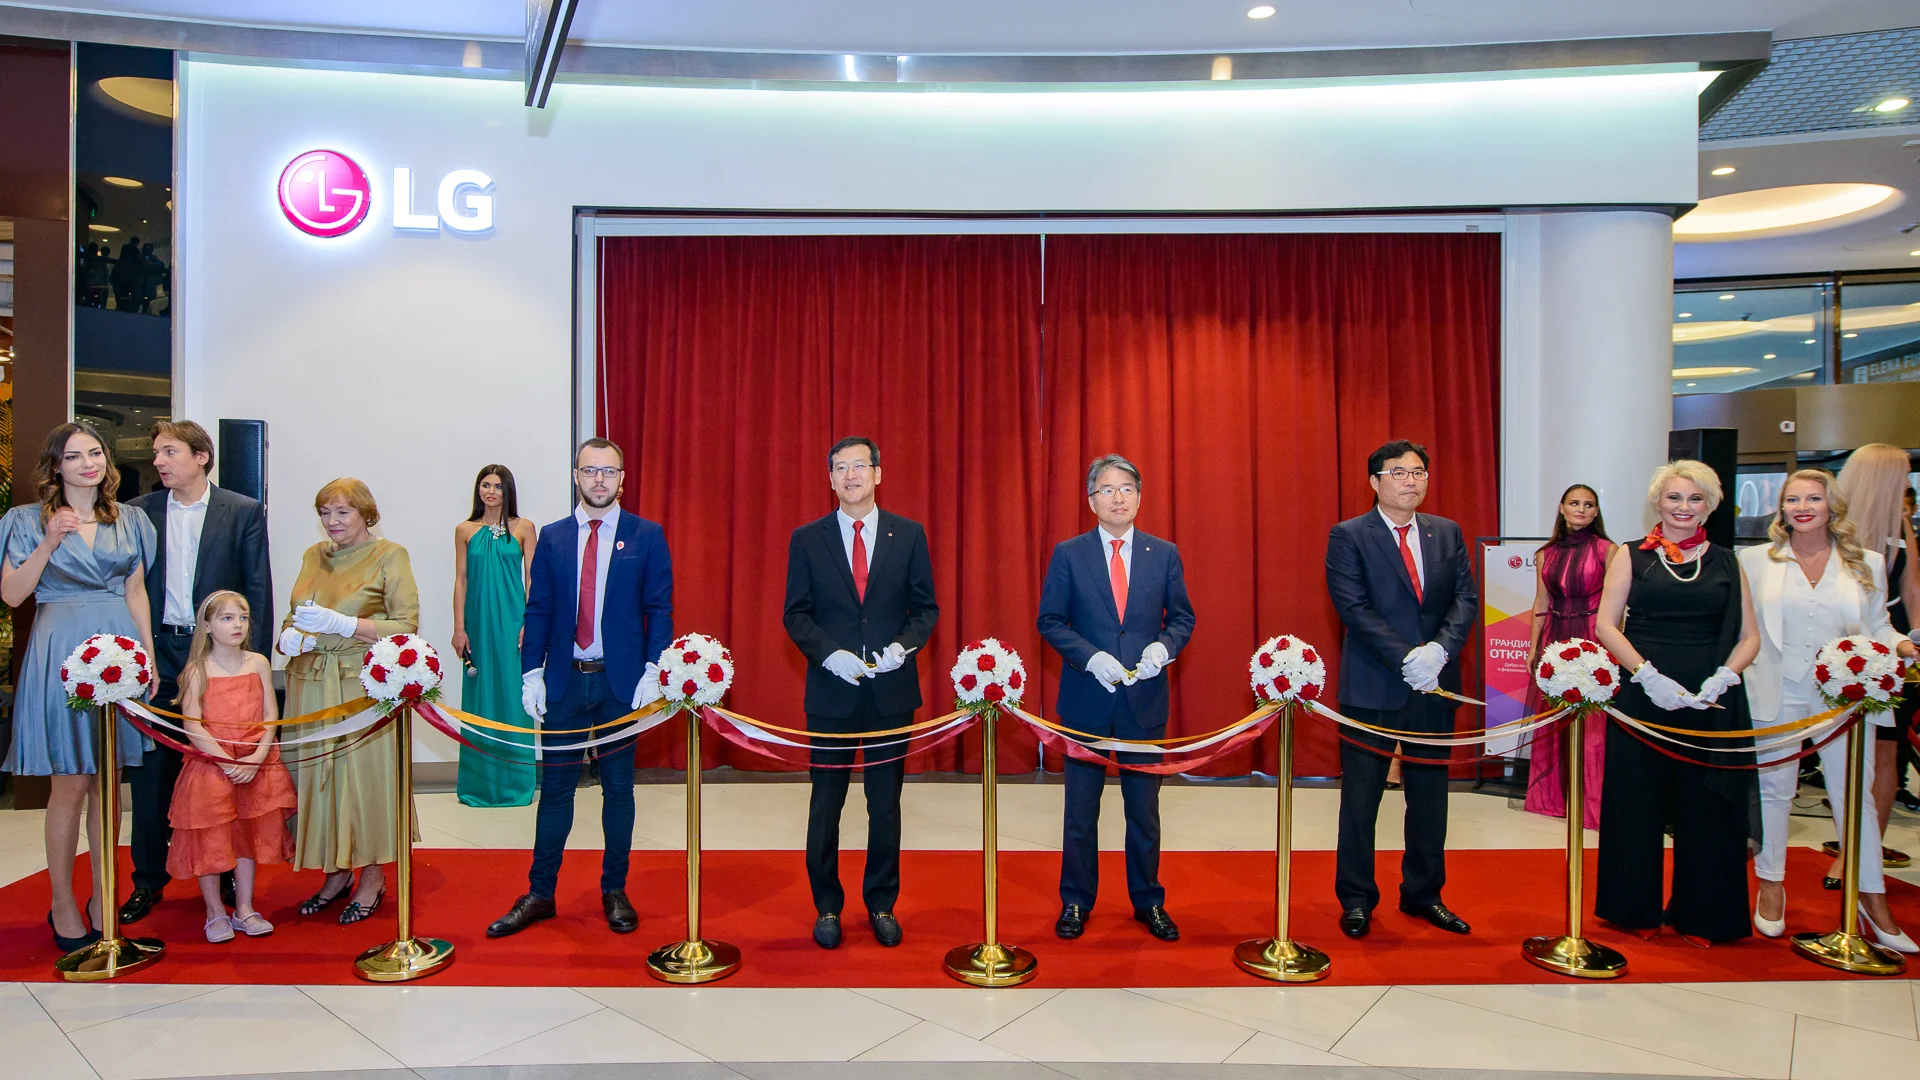 В Москве открылся первый премиальный магазин бытовой техники и электроники LG - фото 1